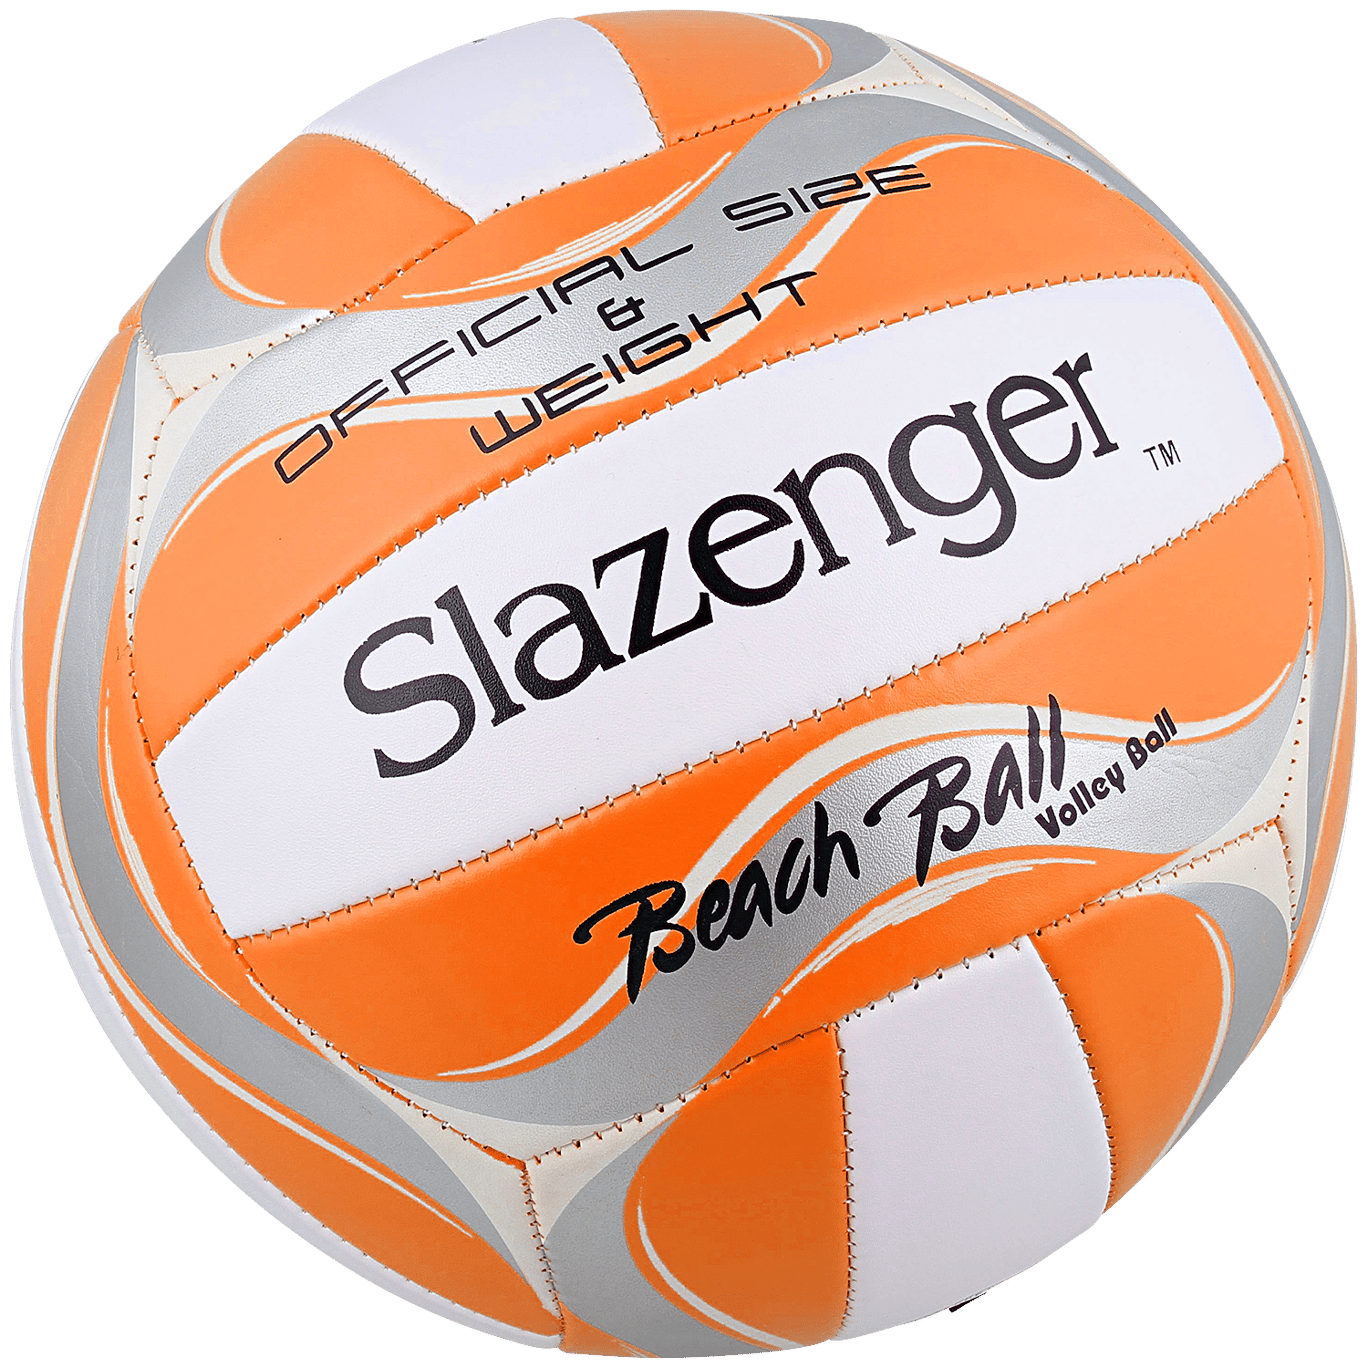 Voleibol de praia Slazenger